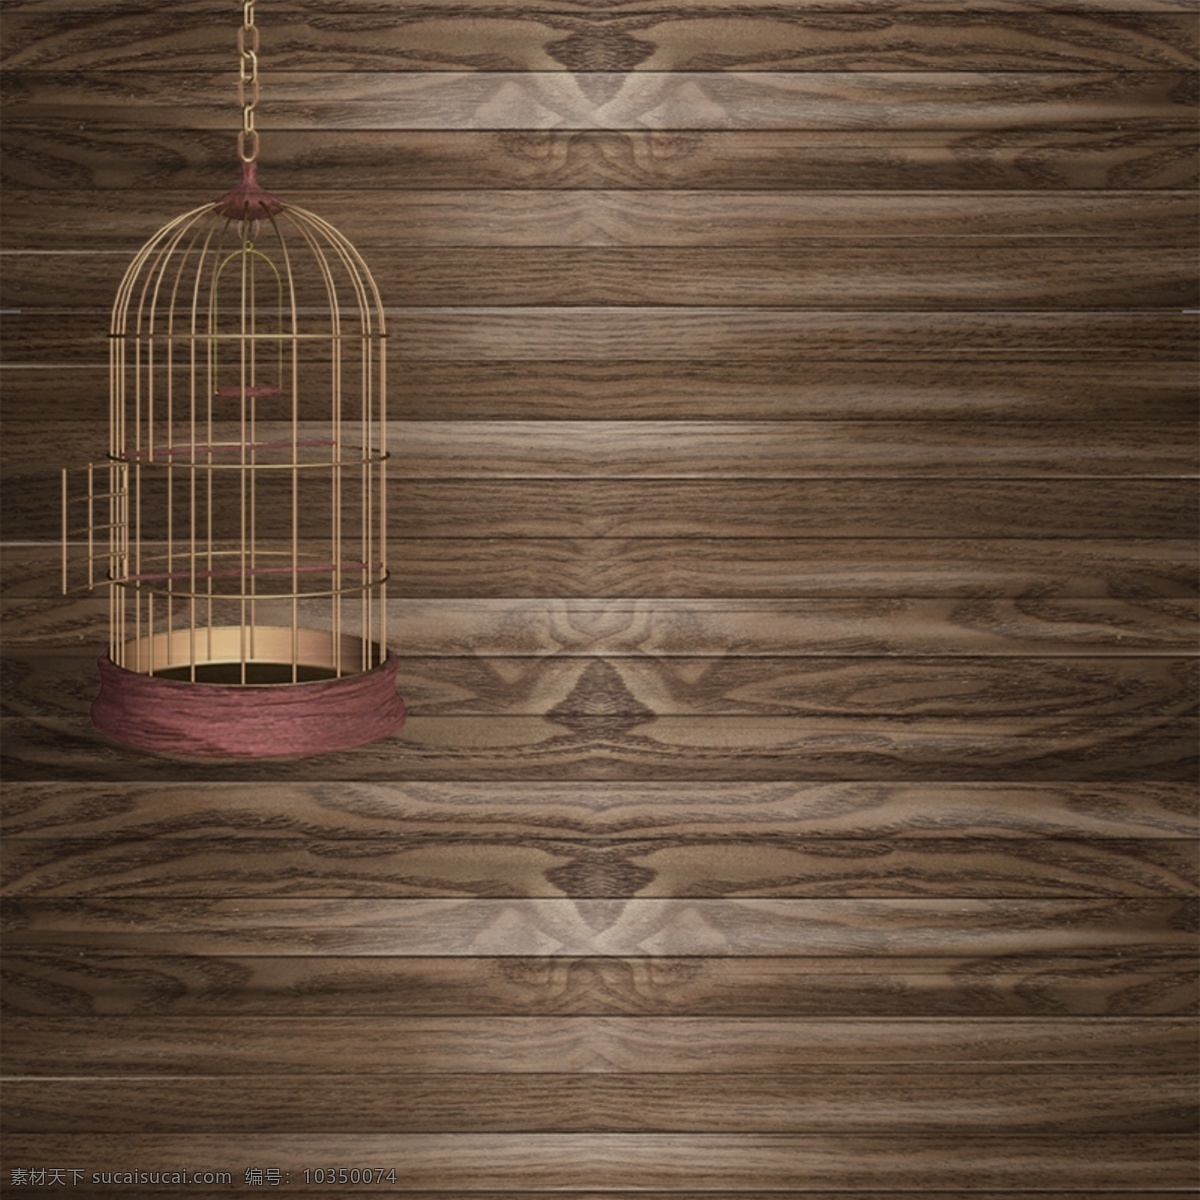 创意鸟笼背景 木板 鸟笼 创意背景 复古背景 简约背景 黑色